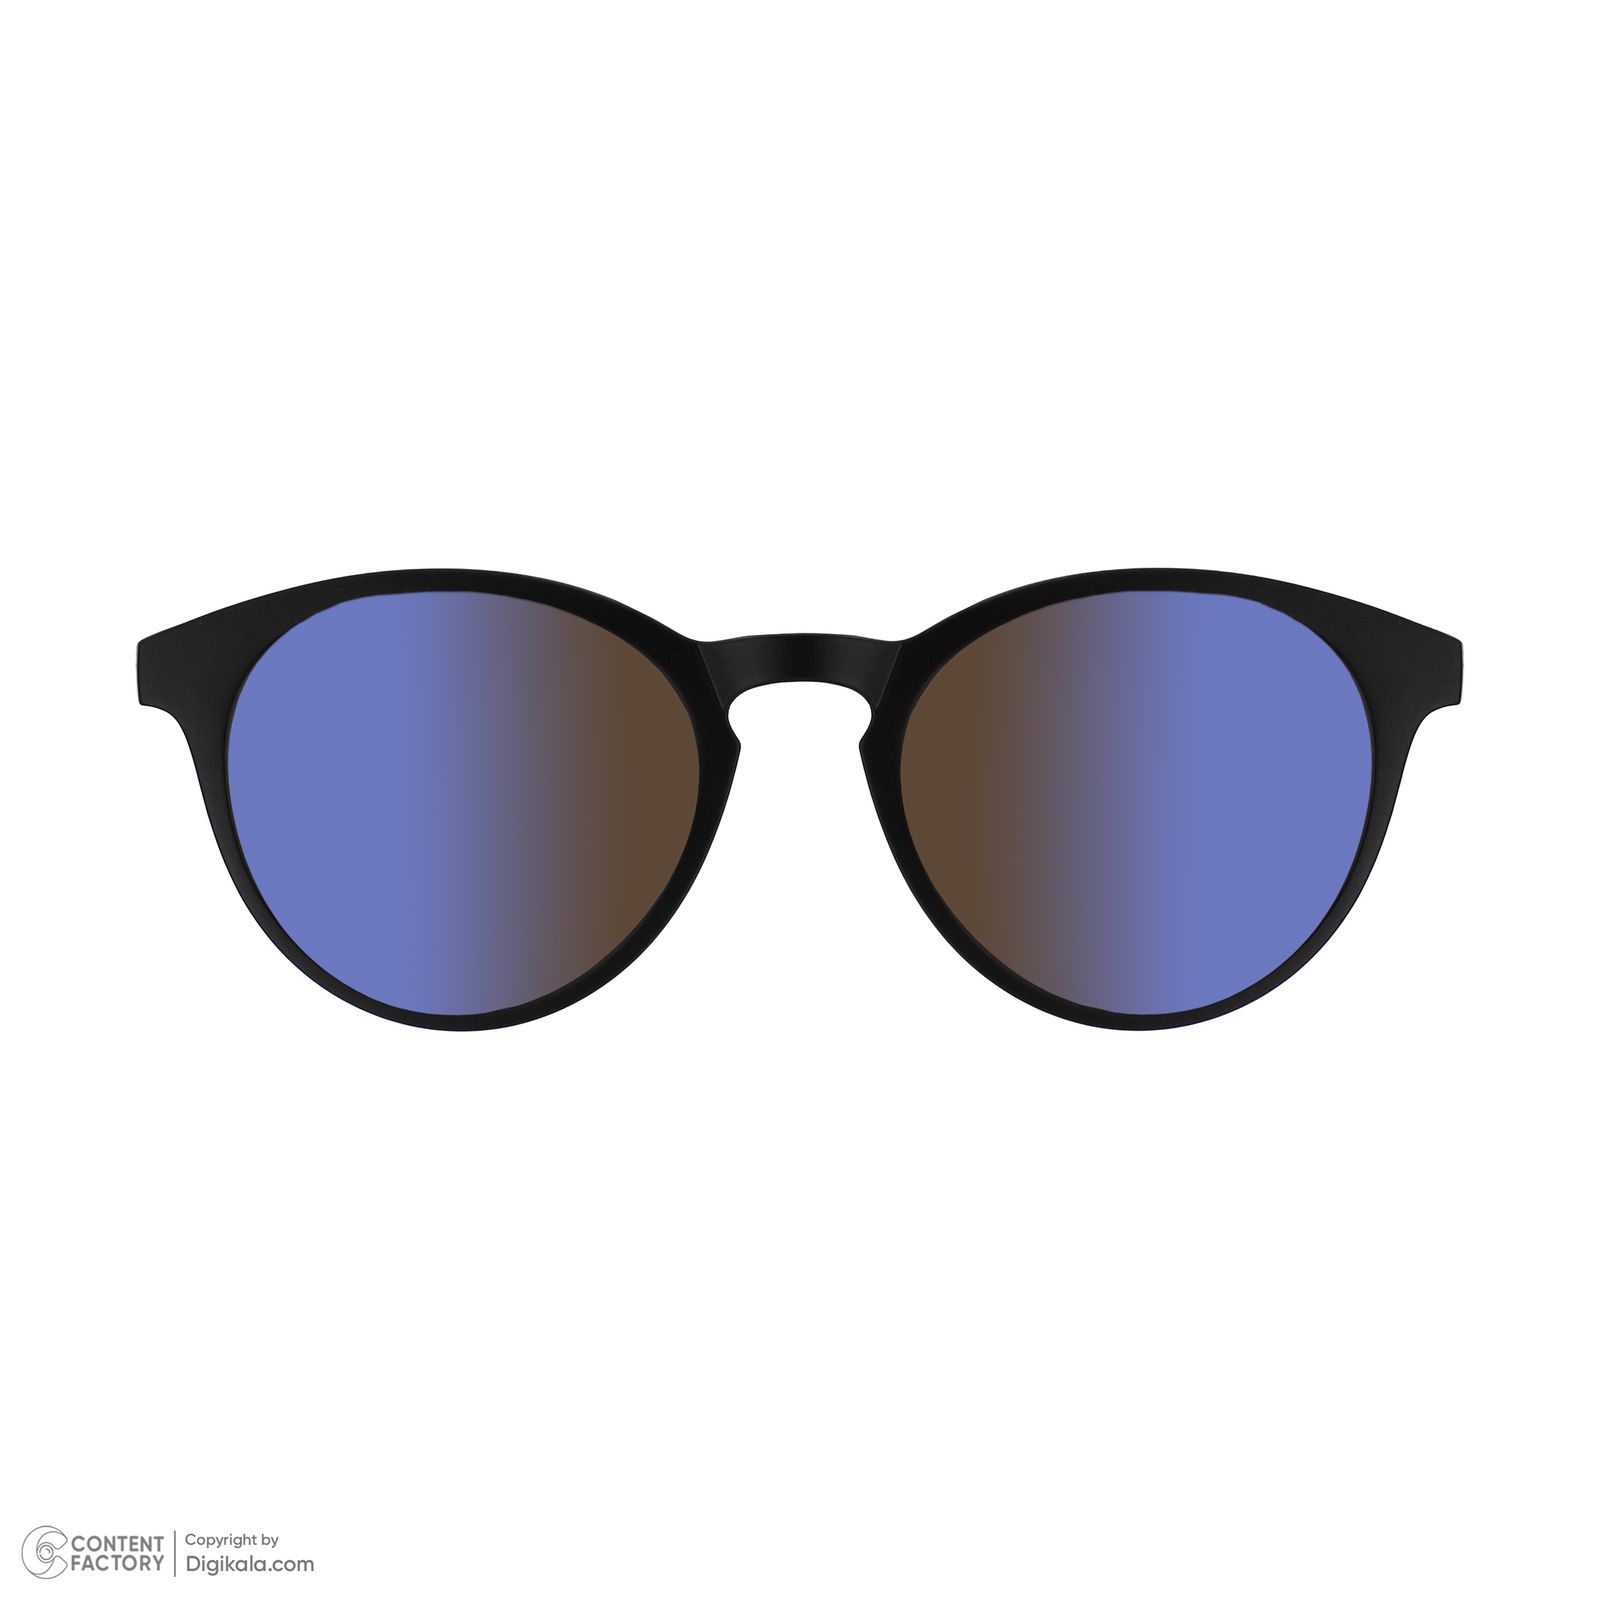 فریم عینک طبی دونیک مدل tr2205-c2 به همراه کاور آفتابی مجموعه 5 عددی -  - 10